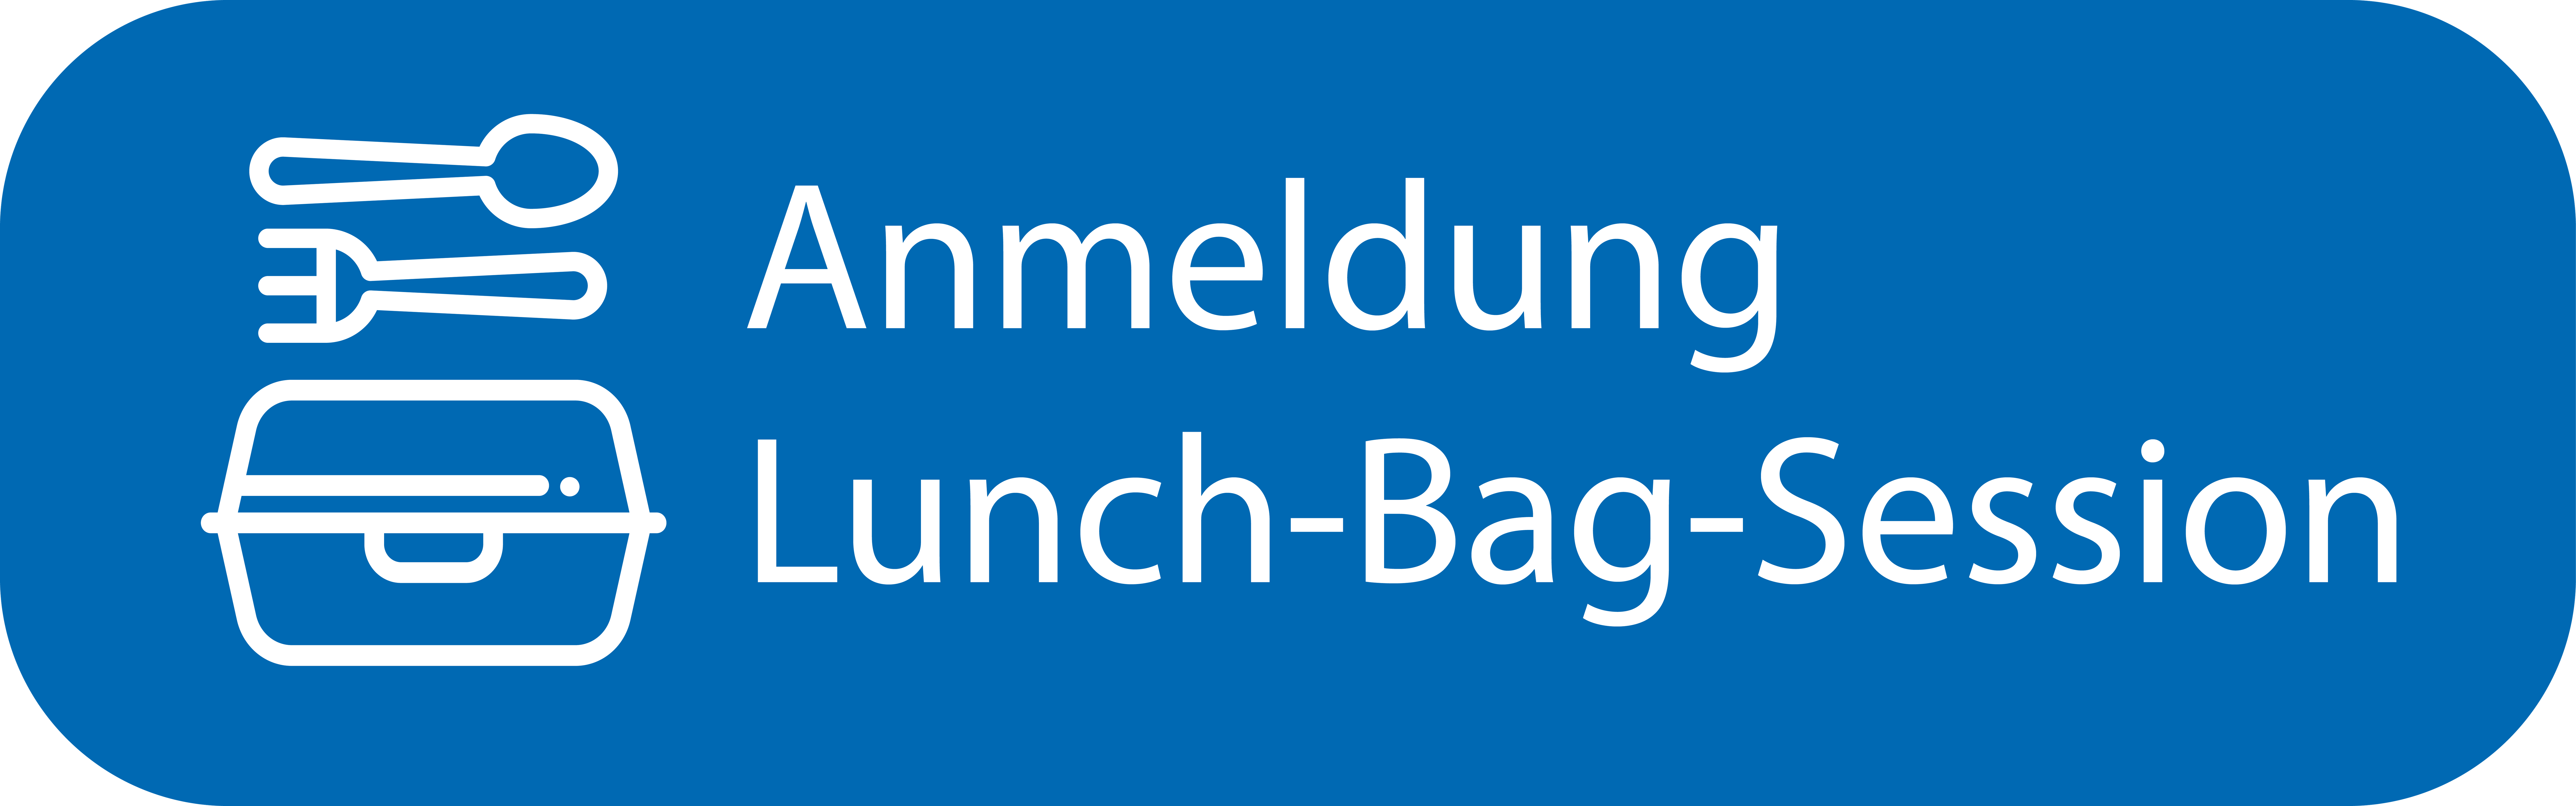 Klicken Sier hier und melden Sie sich zur E-Learning Lunch Bag Session an